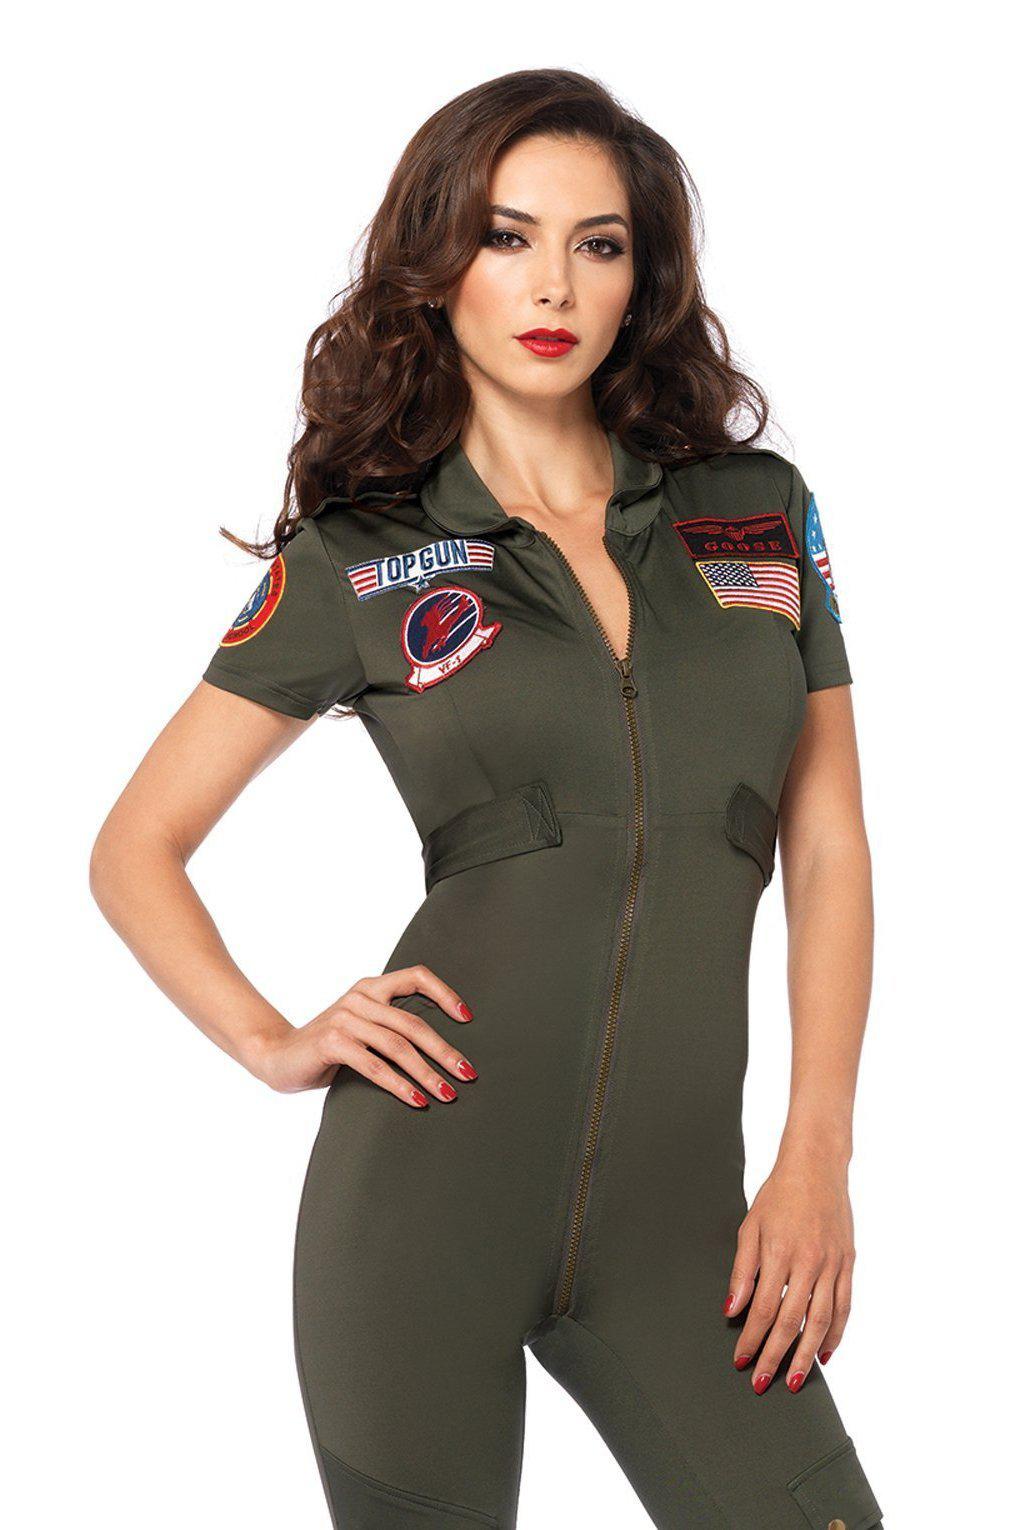 Top Gun Spandex Flight Suit-Military Costumes-Leg Avenue-Tan-S-SEXYSHOES.COM